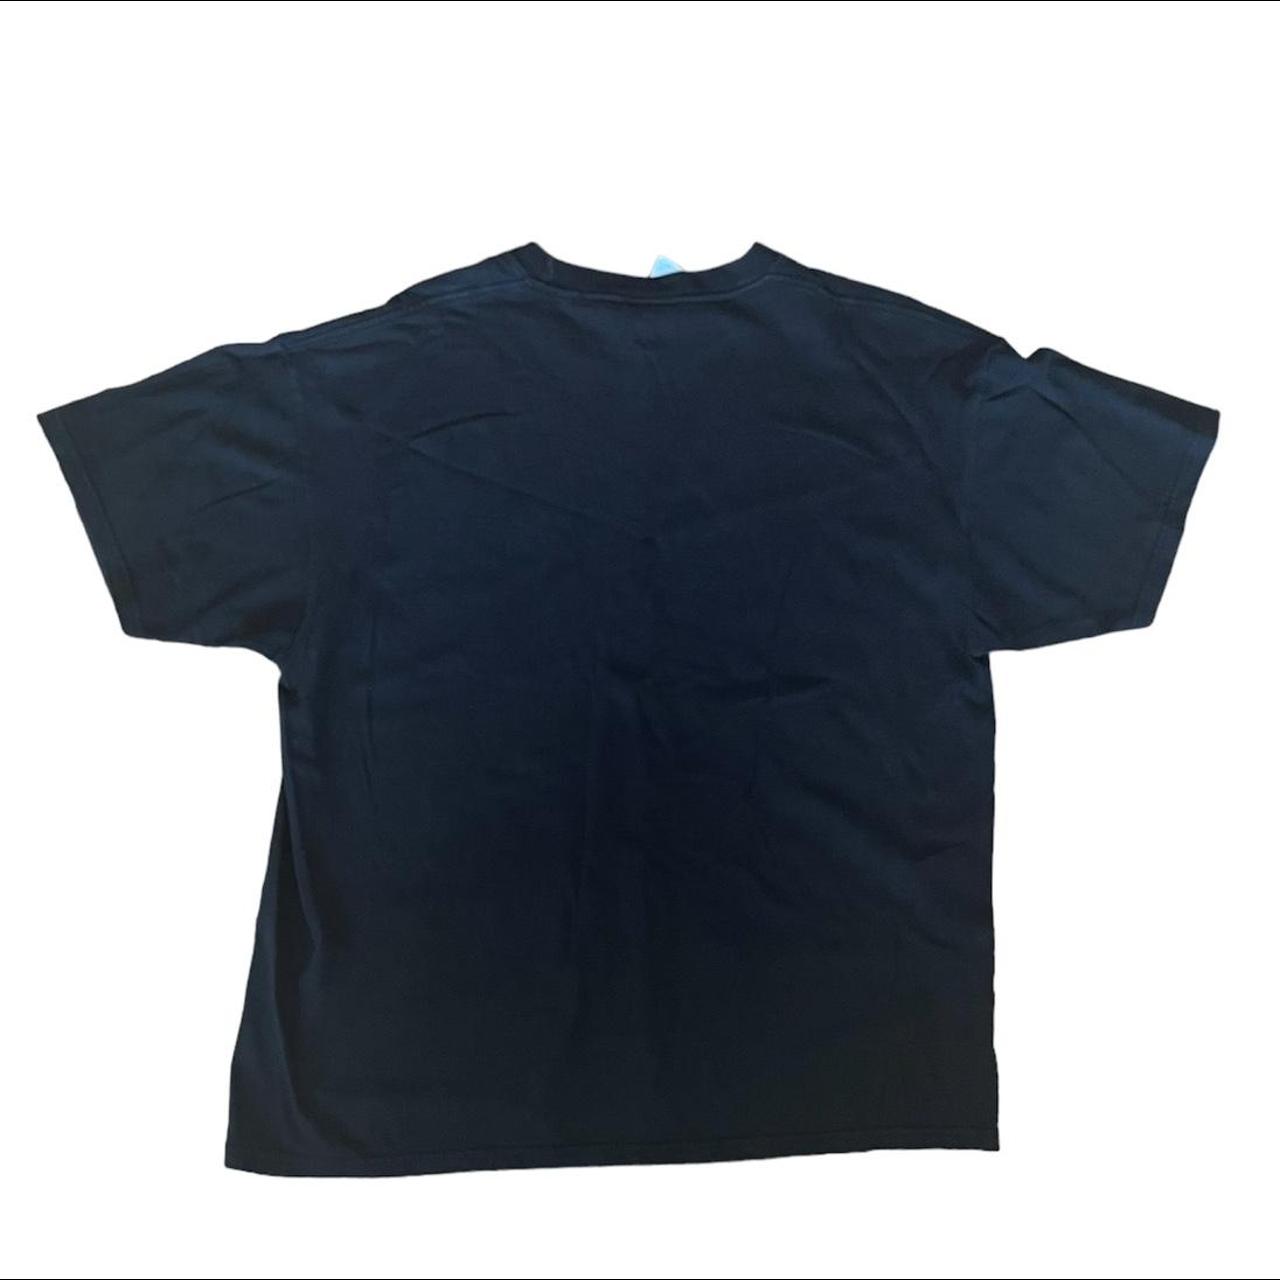 Vintage Hard Rock Cafe T-shirt size: XL Feel free... - Depop